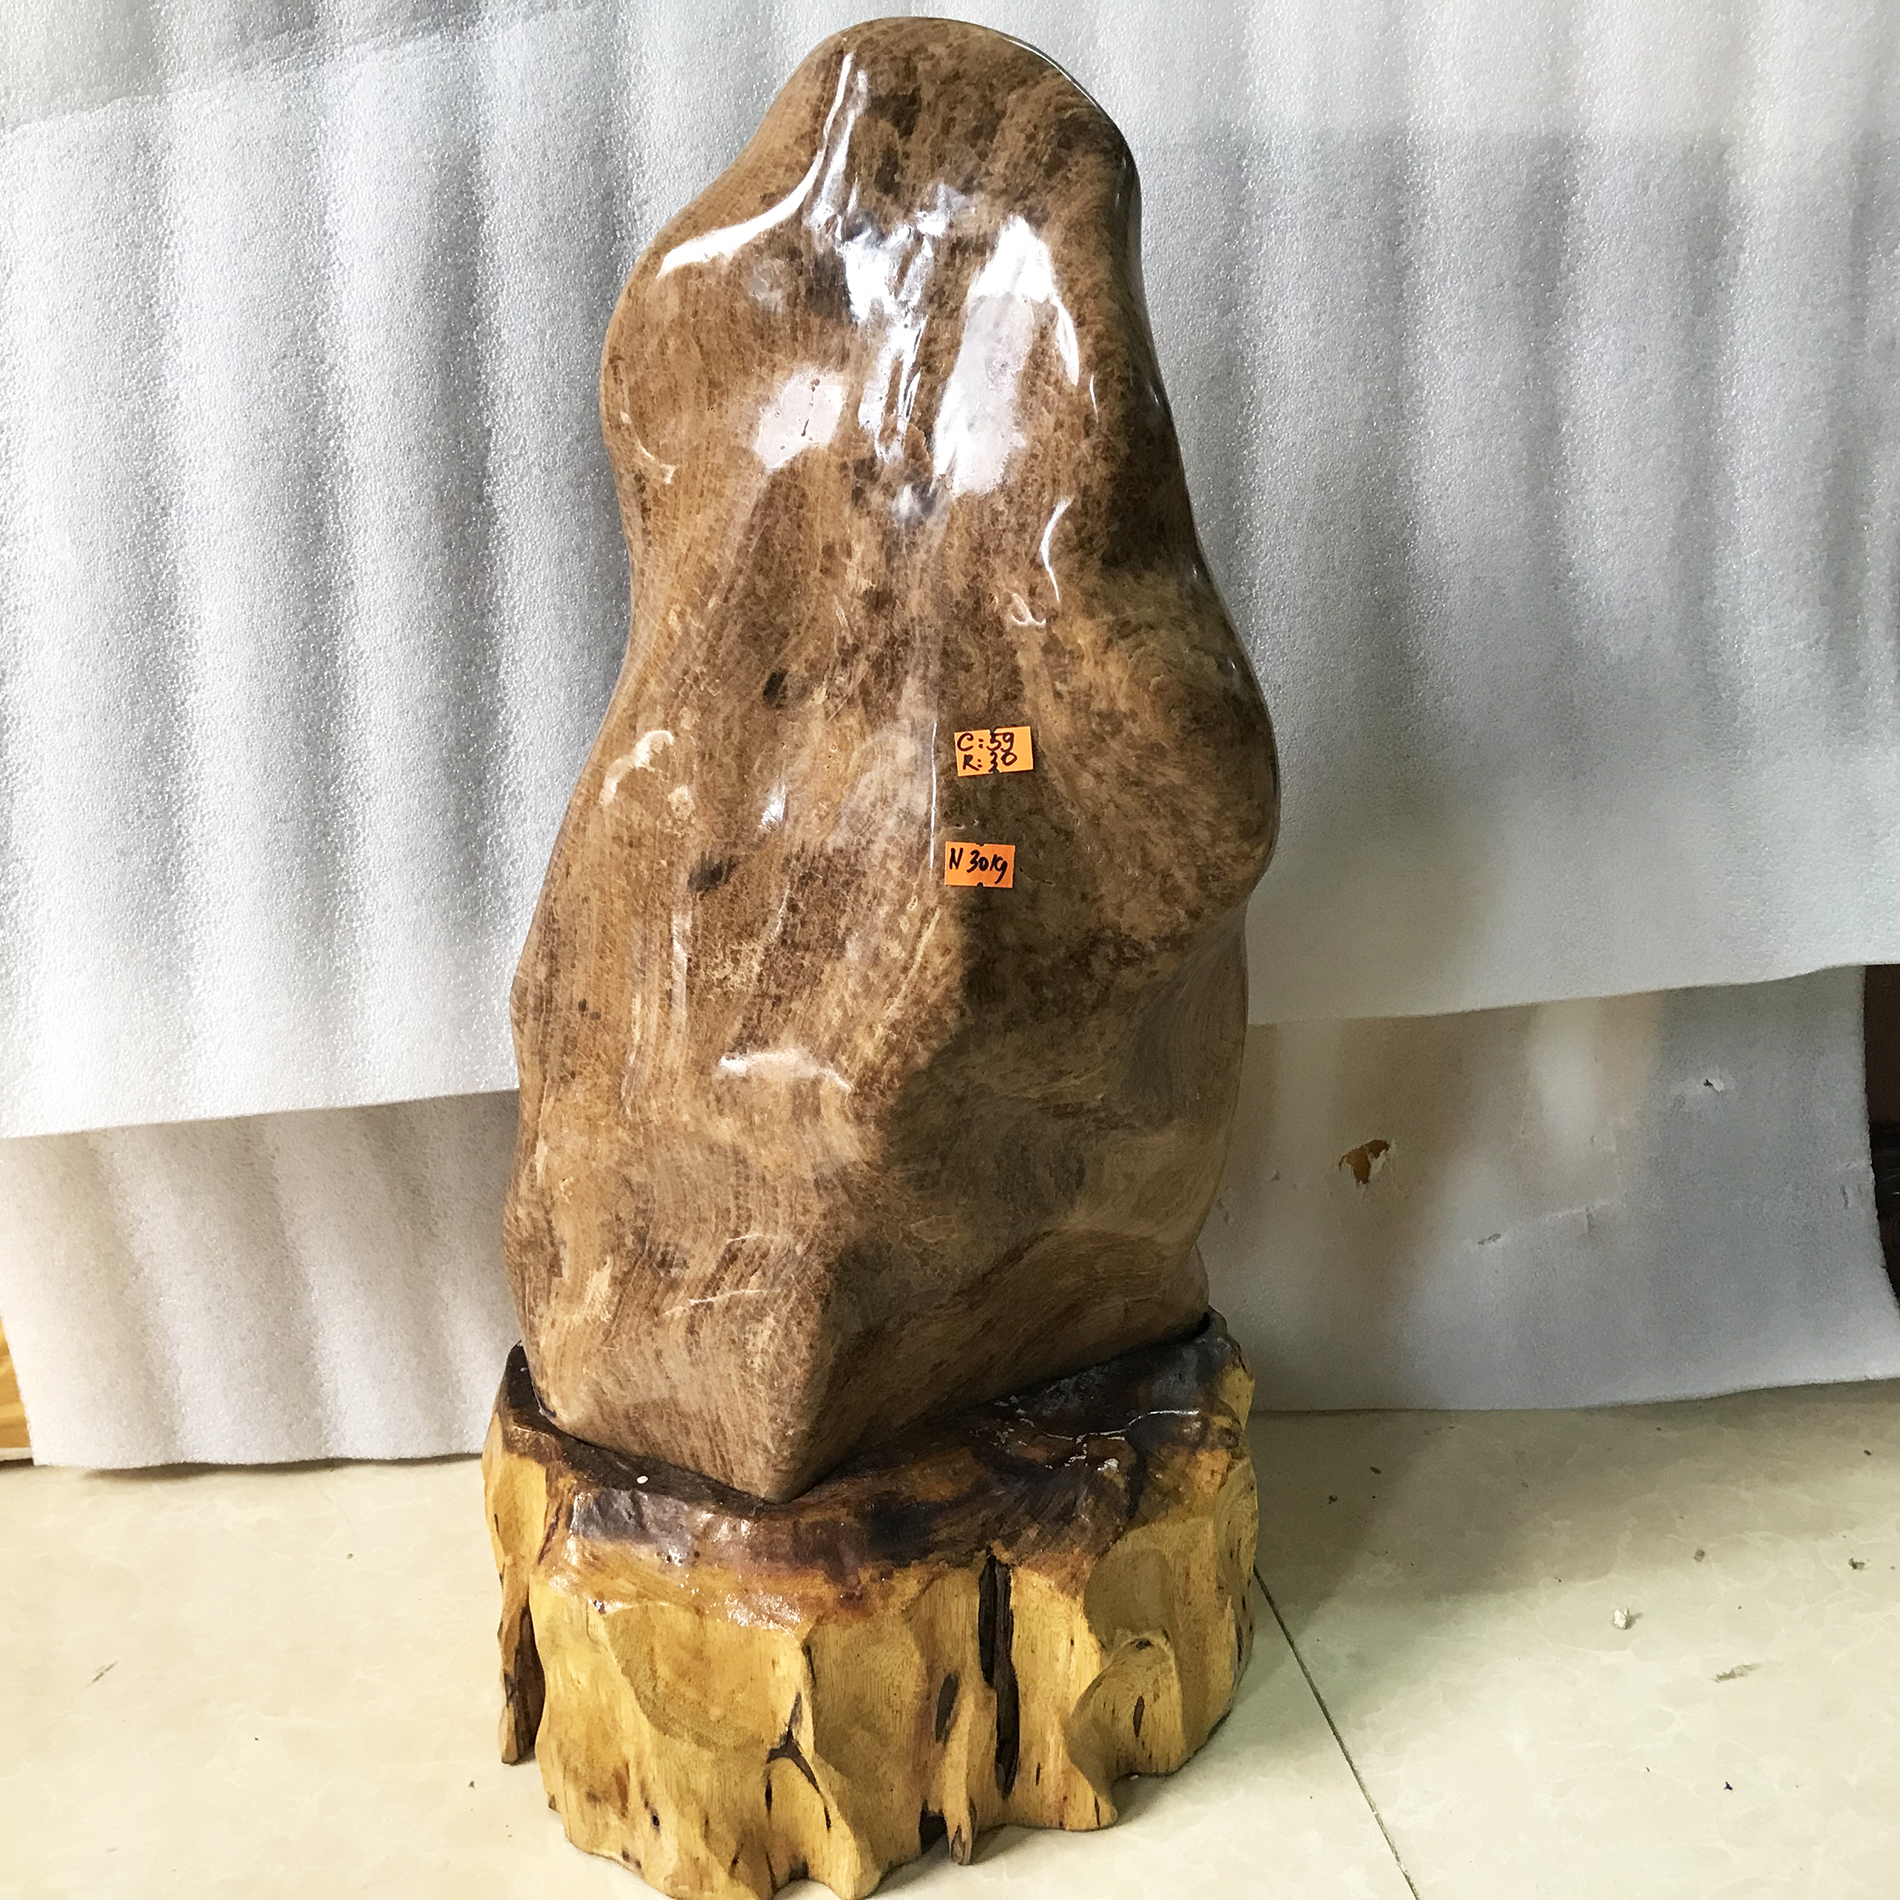 Đá, Cây đá, trụ đá tự nhiên màu vàng gỗ hóa thạch cao 59 nặng 30 kg cho người mệnh Kim